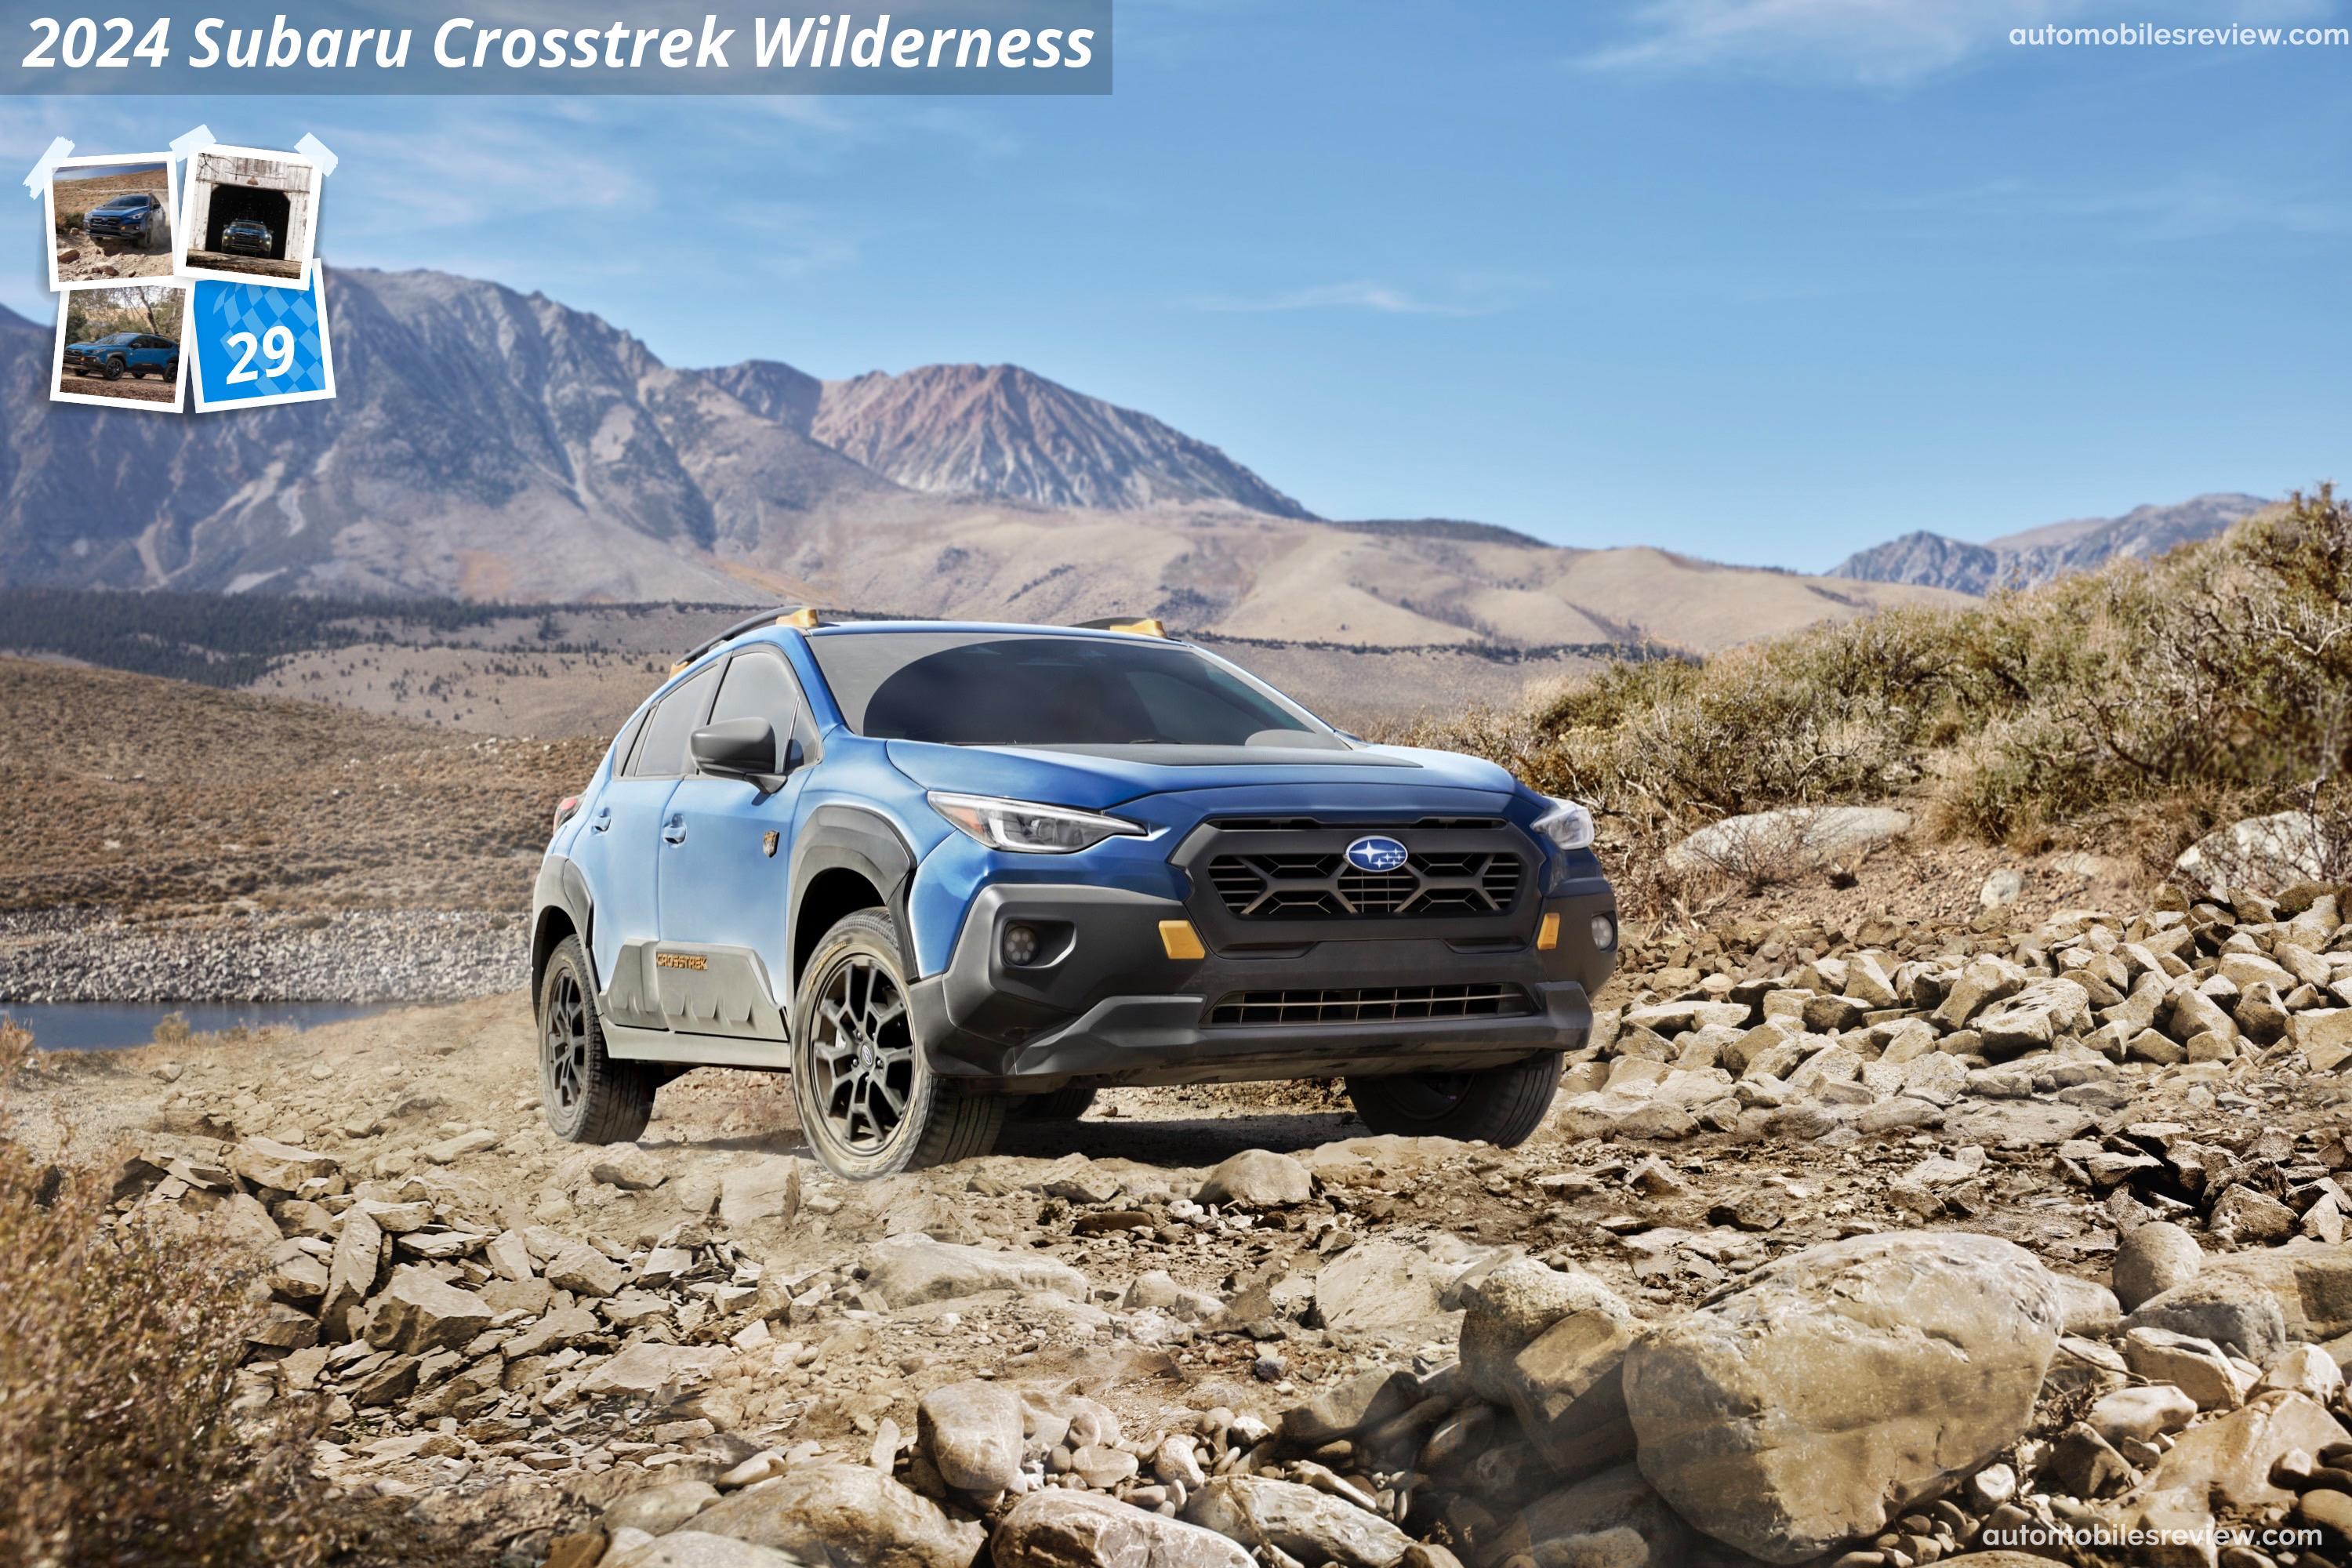 Subaru Crosstrek Wilderness Pictures Information